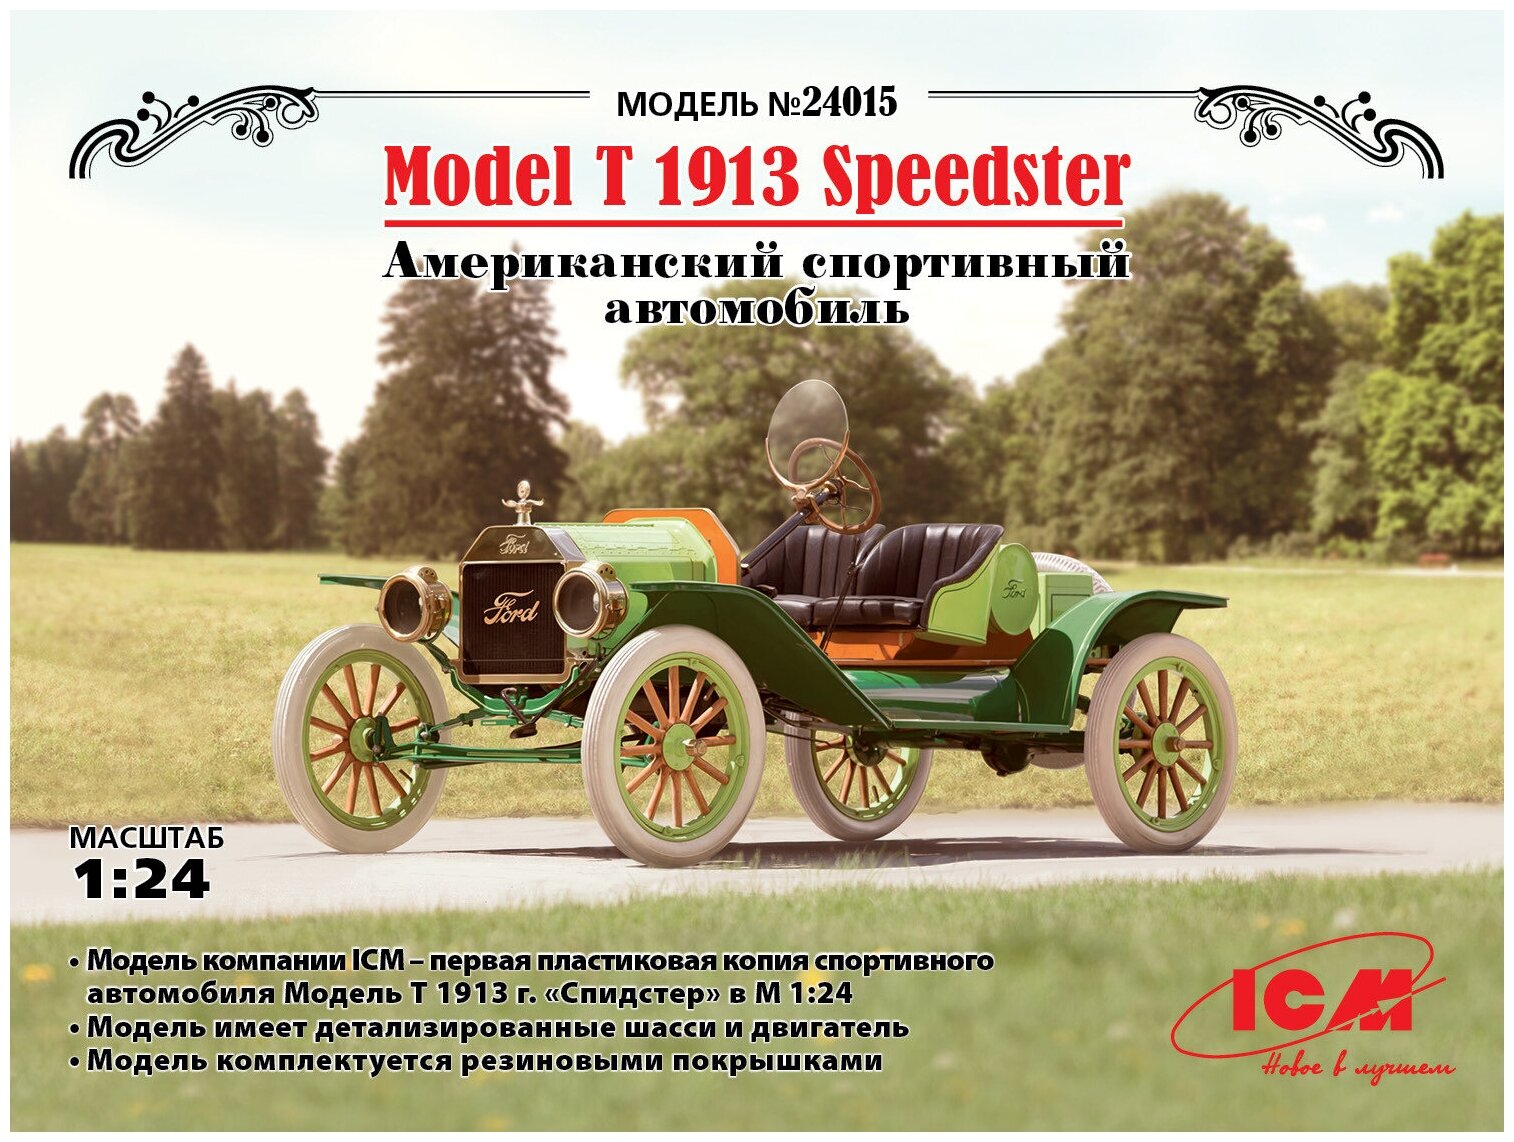 ICM Сборная модель Модель Т 1913 г. Спидстер Американский спортивный автомобиль, 1/24